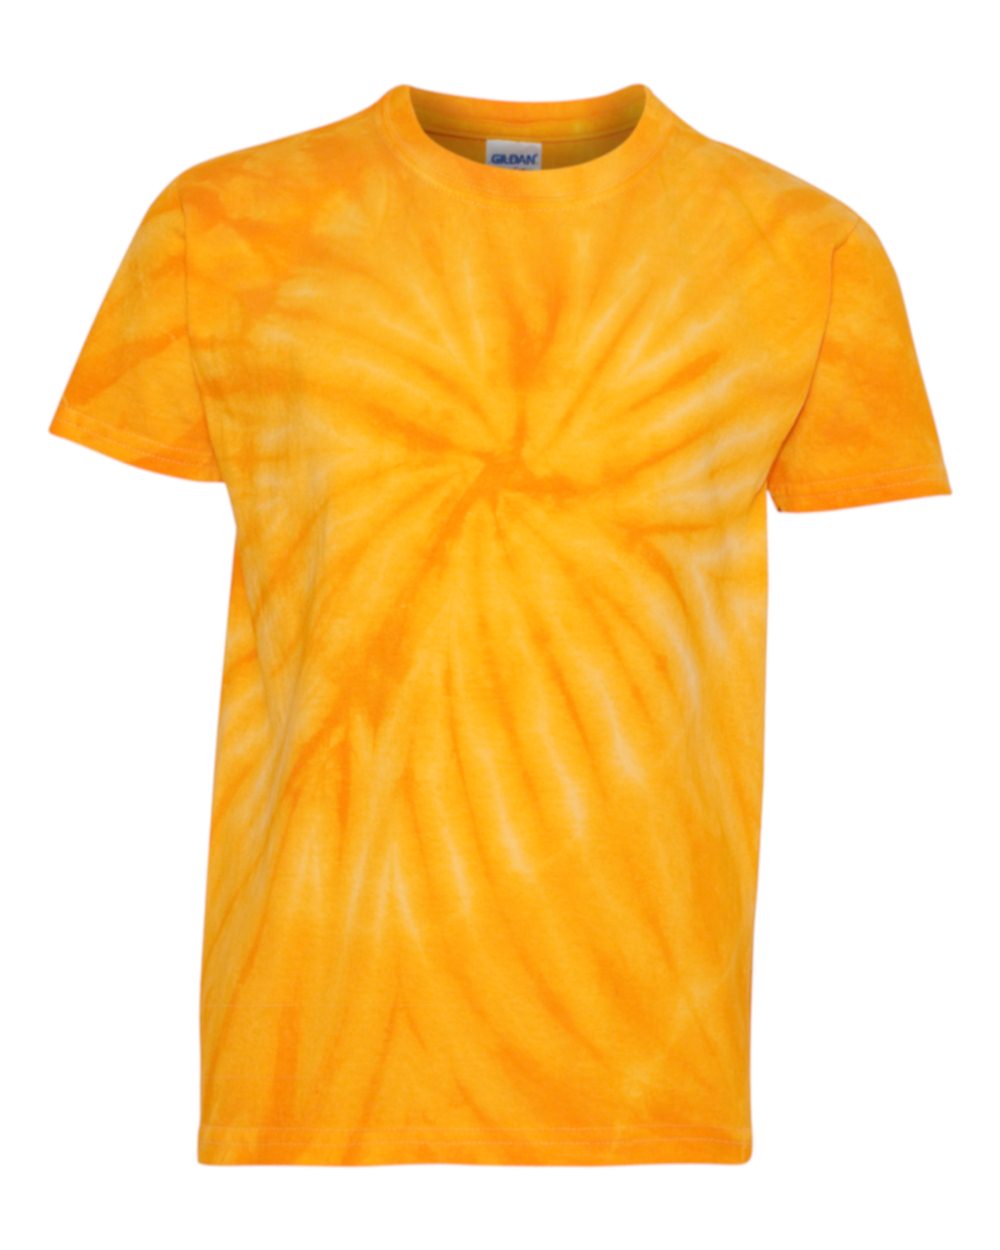 Glen Meadow Tie Dye t-shirt Design 3